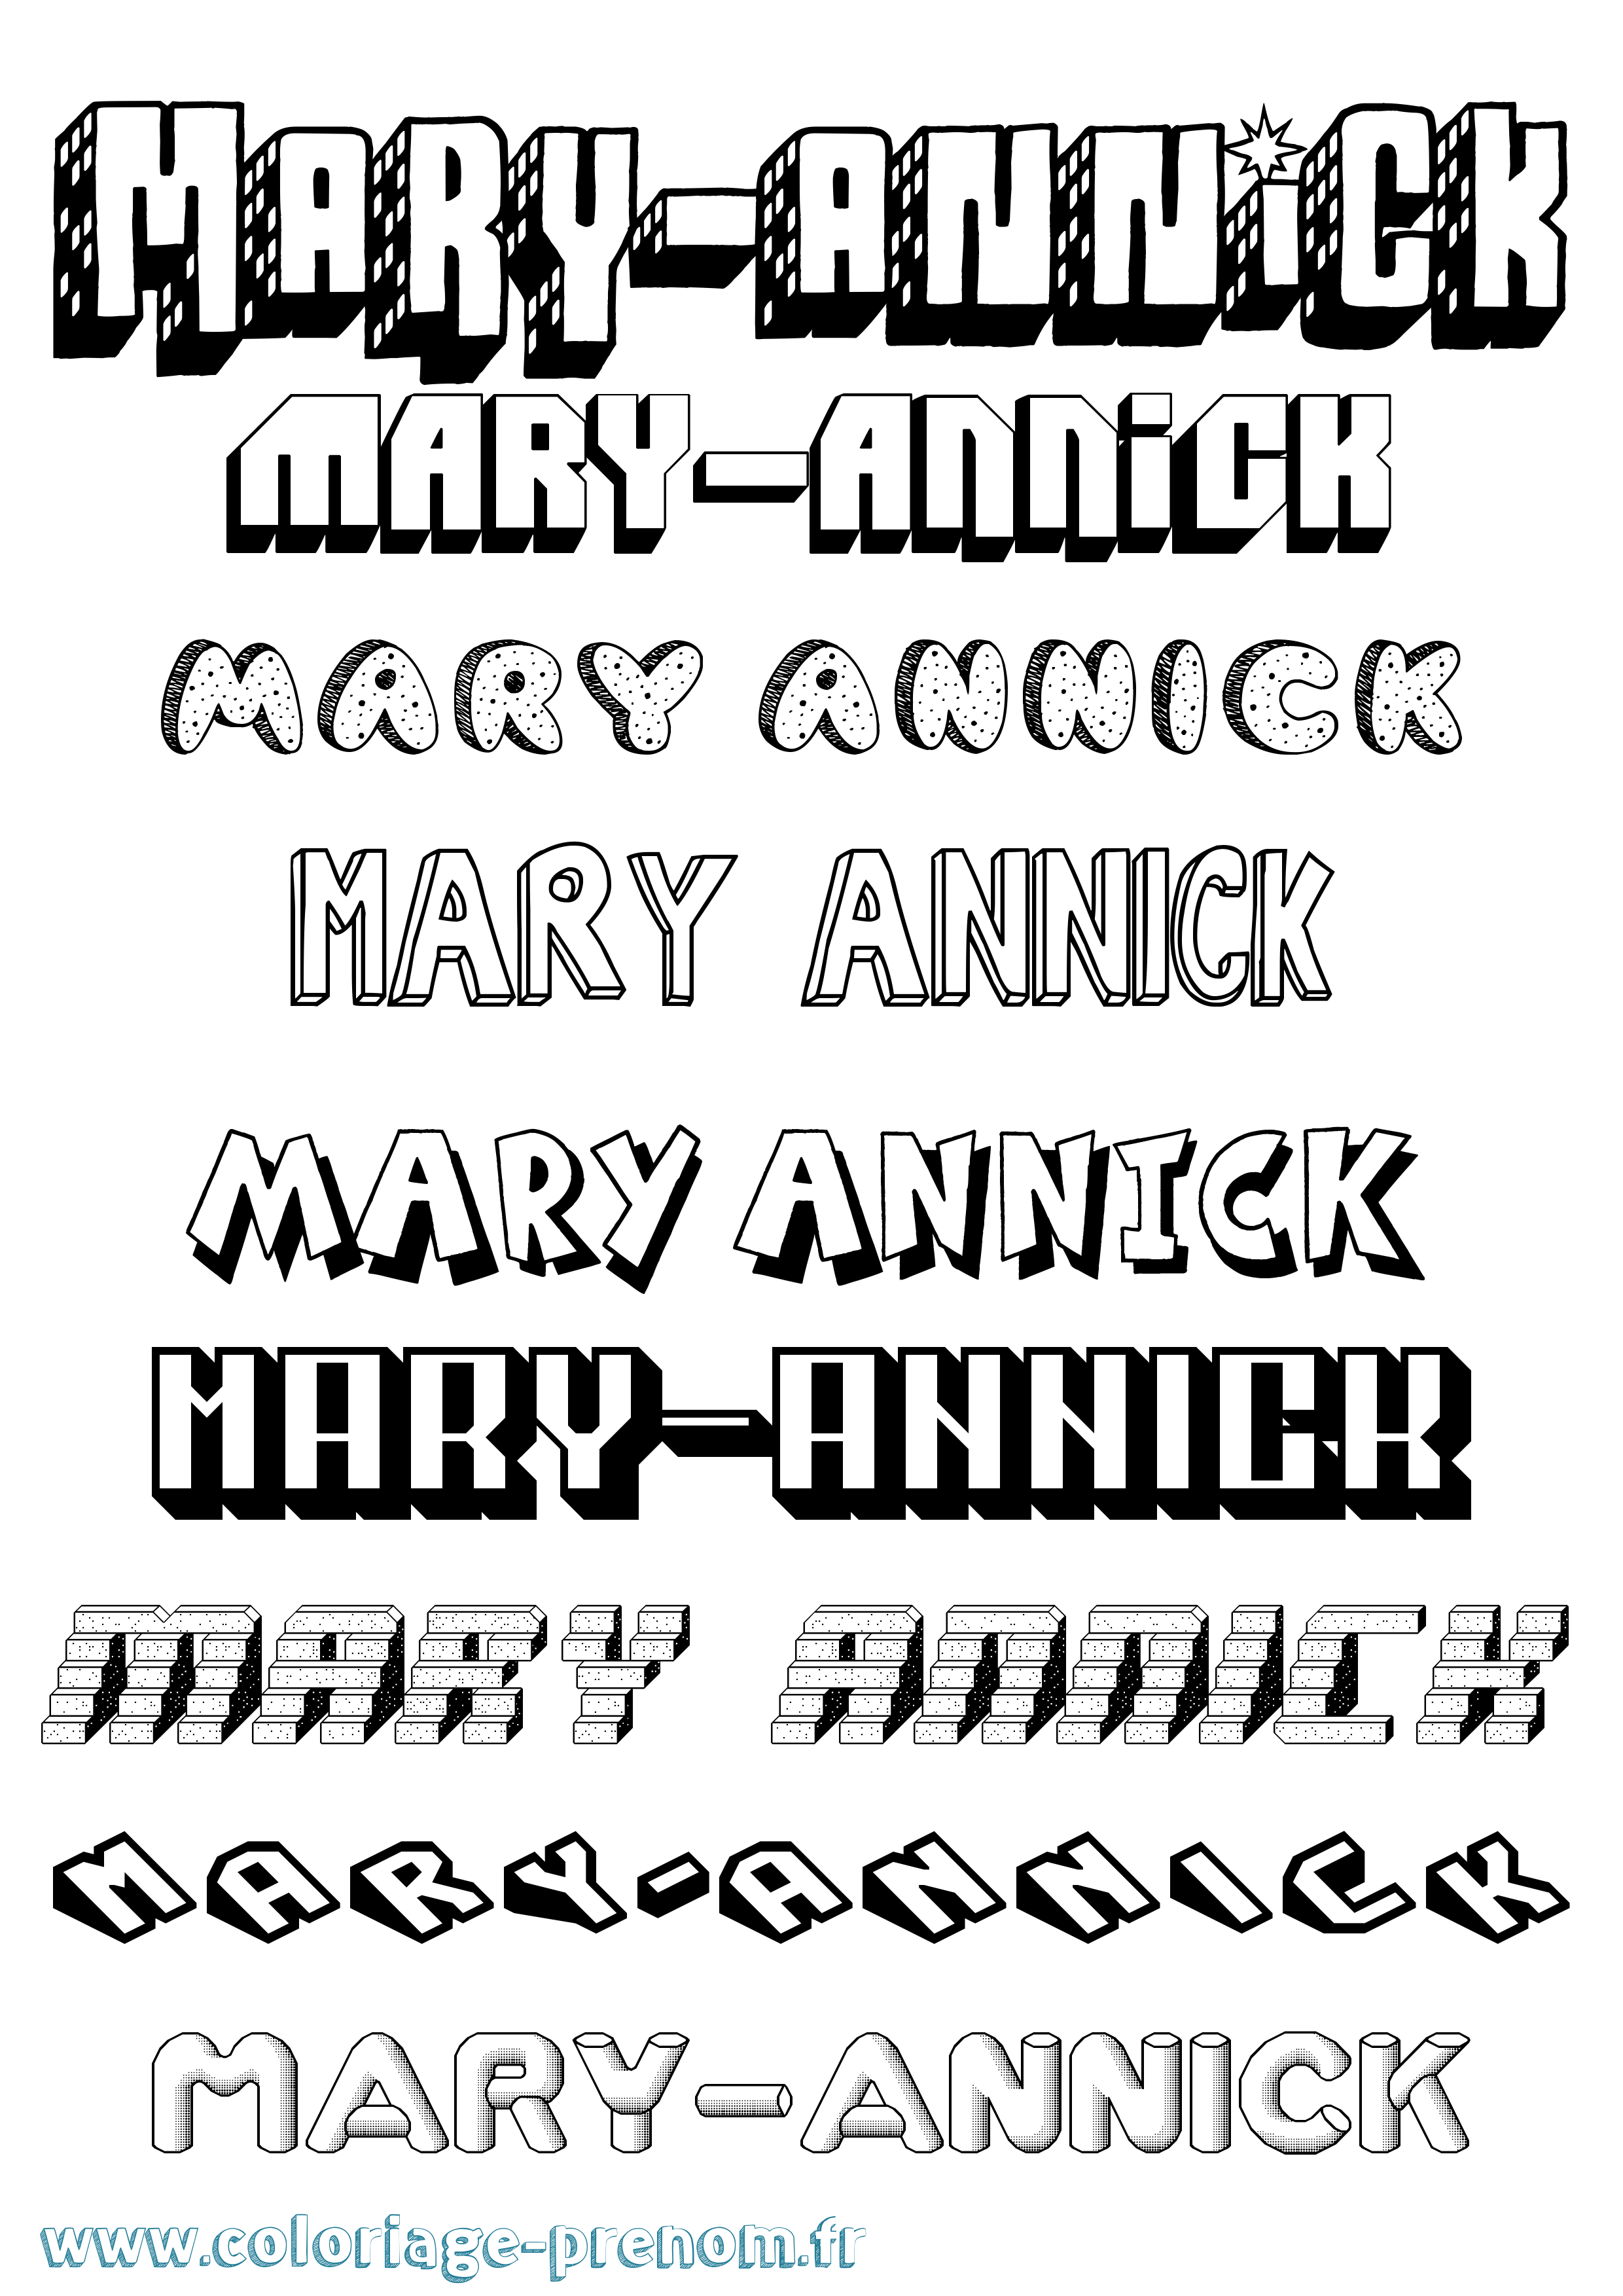 Coloriage prénom Mary-Annick Effet 3D